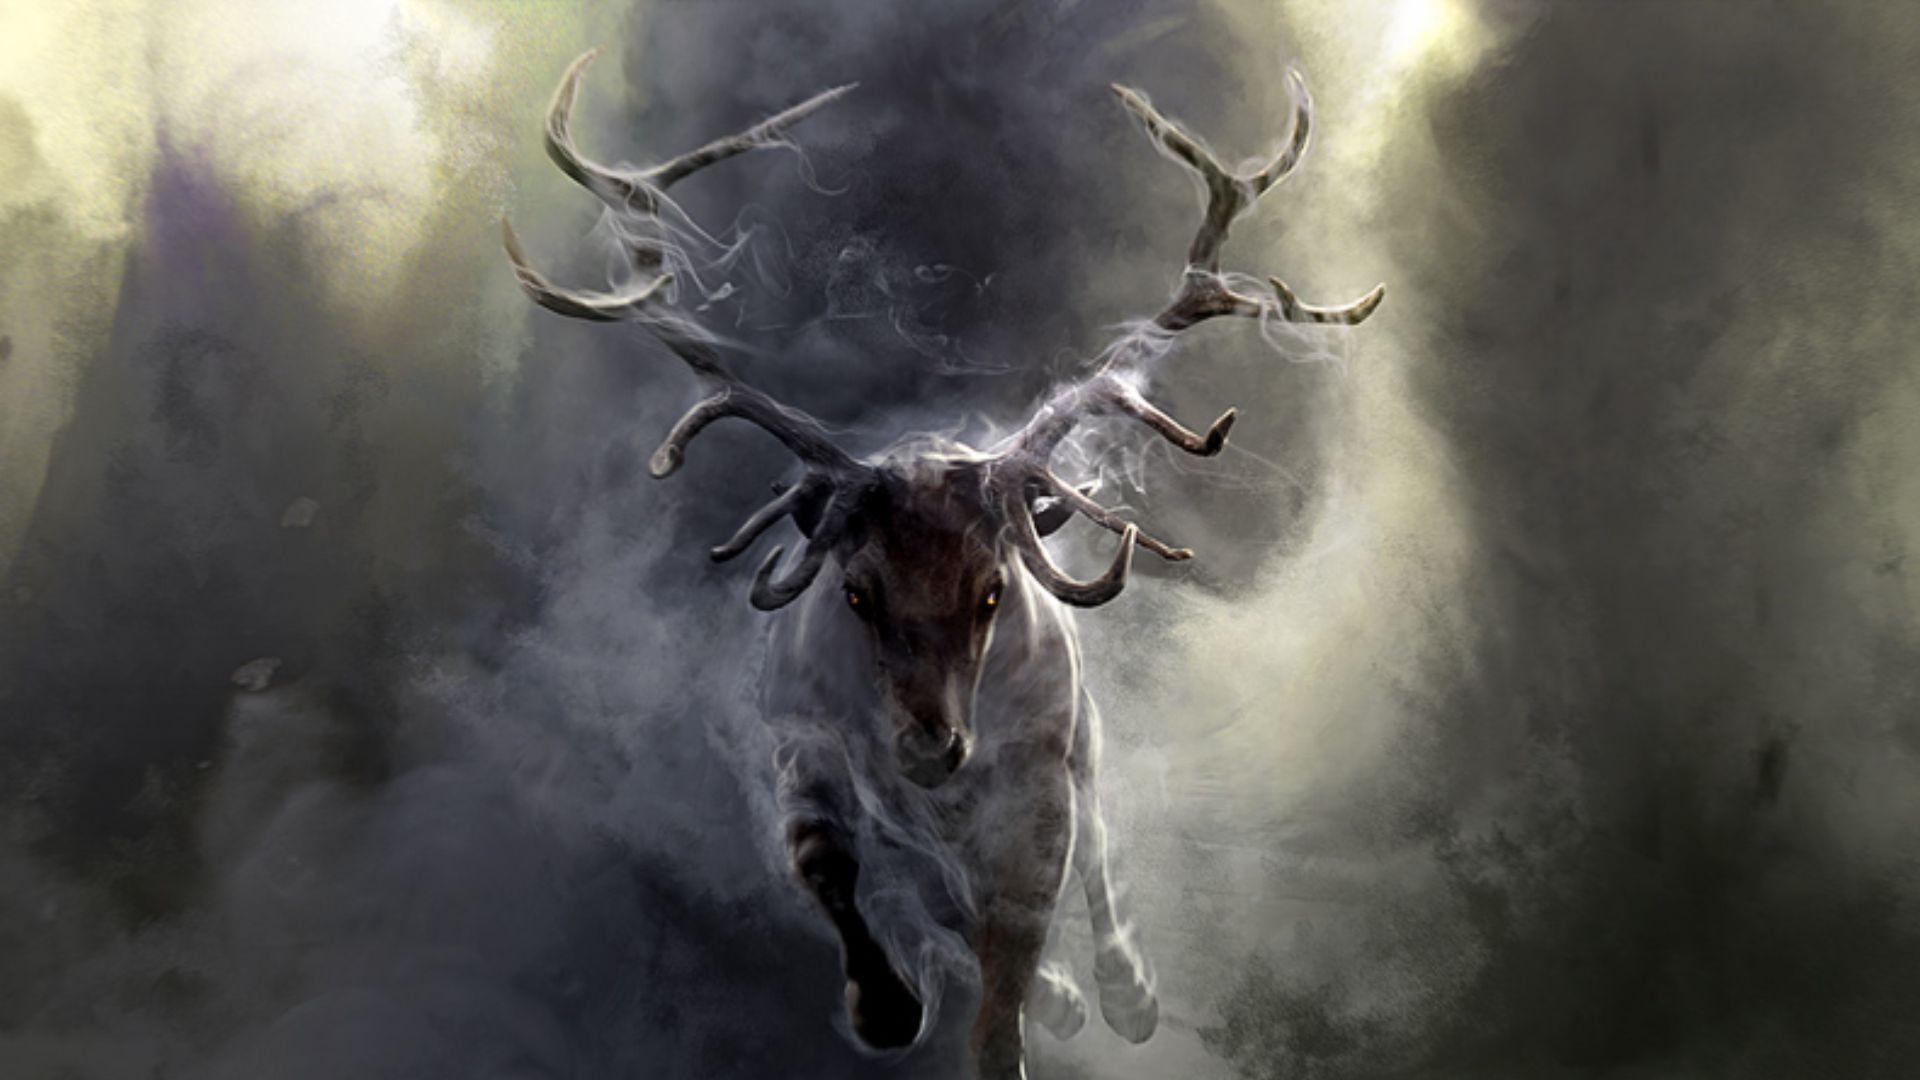 Download Wallpaper 1920x1080 Deer, Smoke, Run, Horns Full HD 1080p